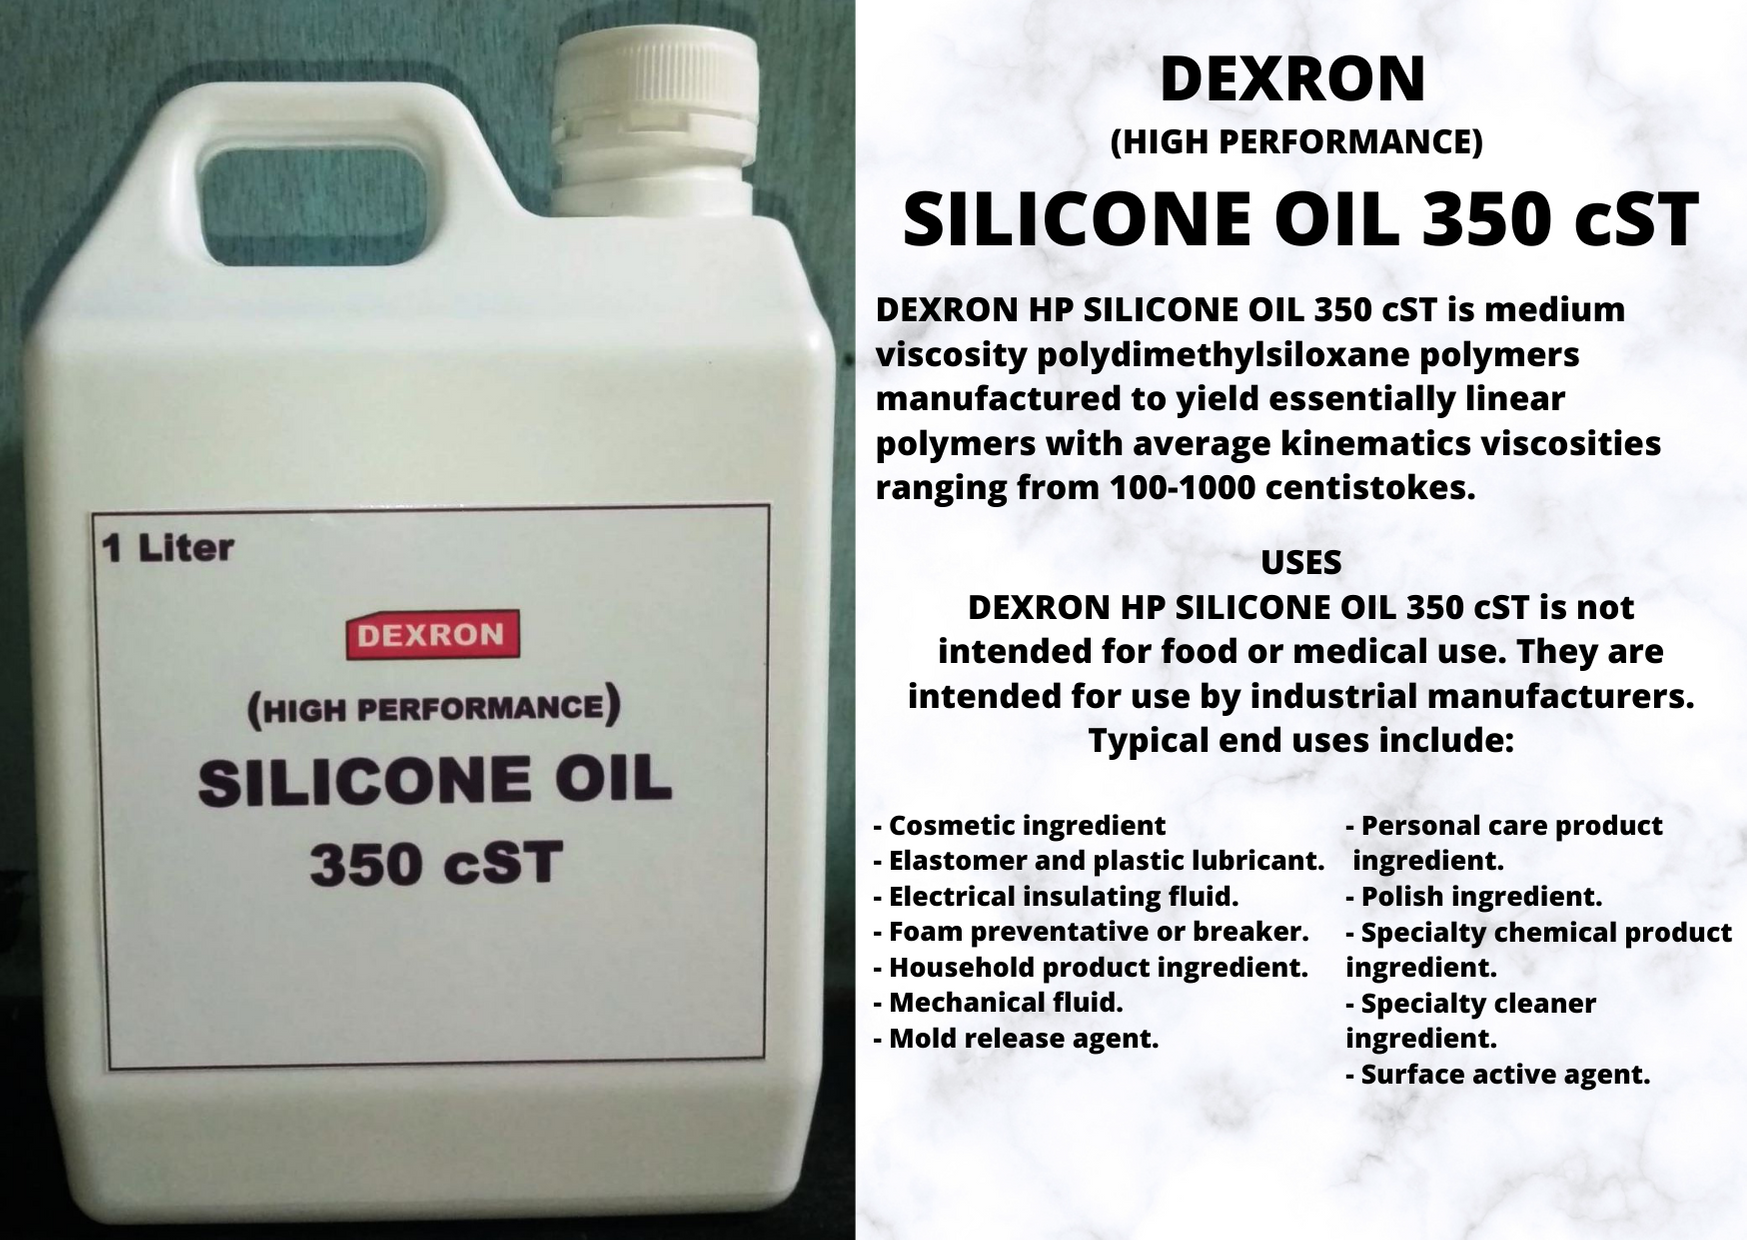 Silicone Oil 350 cSt - /en